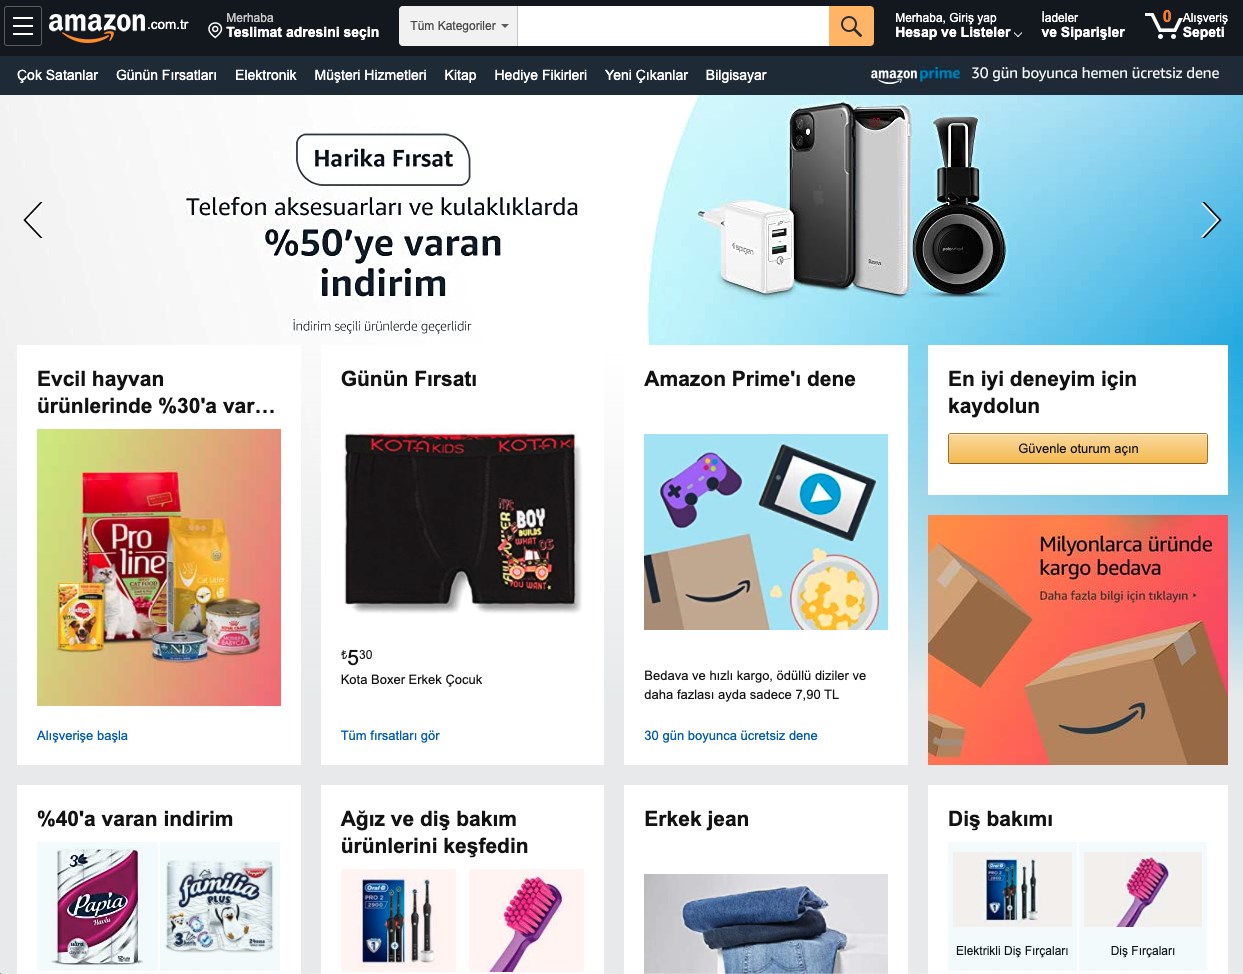 Amazon Türkiye’nin 9-11 Kasım indirimlerinde ilk ürünler gelmeye başladı